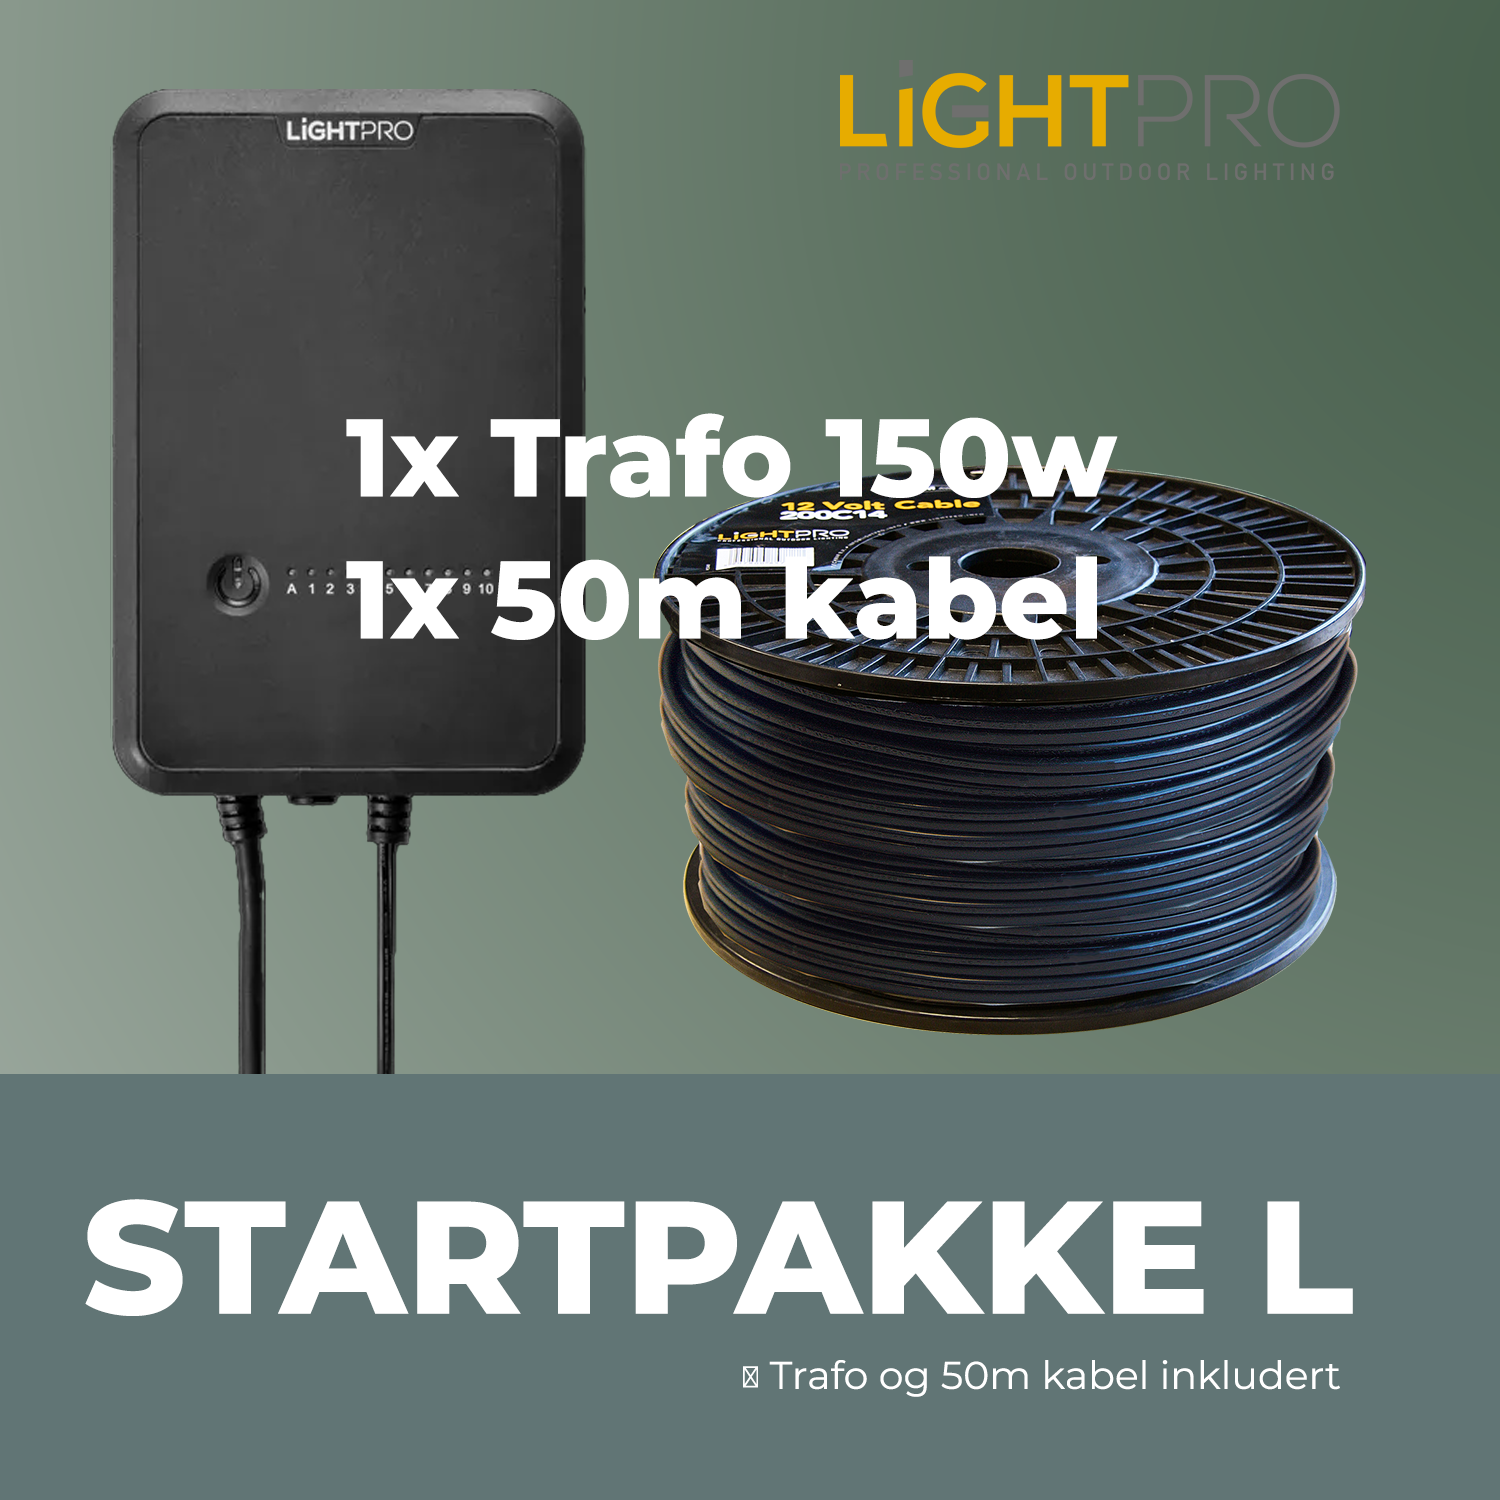 lightpro_startpakke L